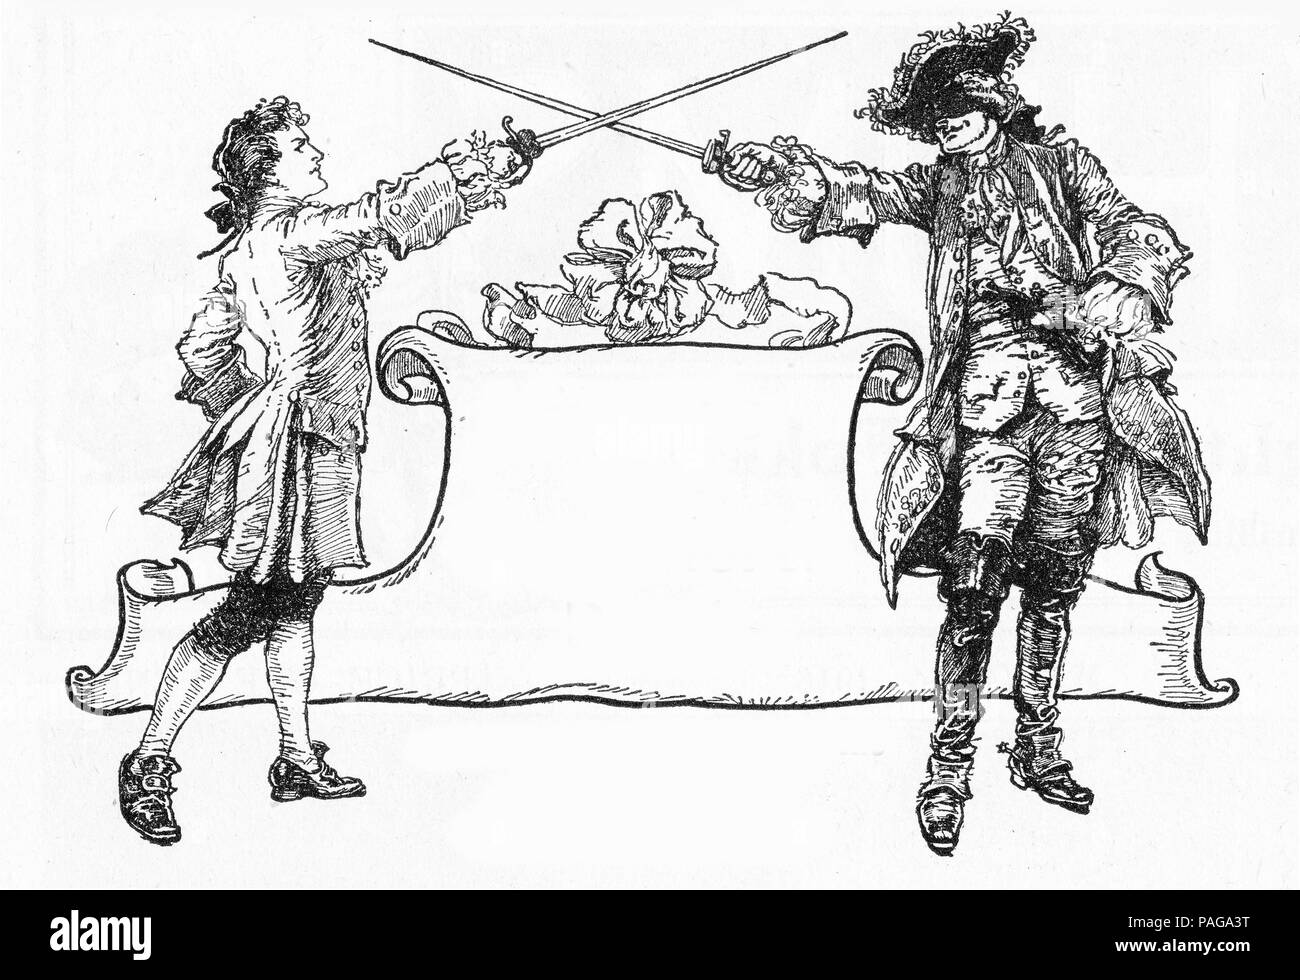 Gravur von zwei schwertkämpfer ihre Waffen über einen Bildlauf zum Kopieren. Von Chums, einer illustrierten Zeitschrift für Jungen, 1916. Stockfoto